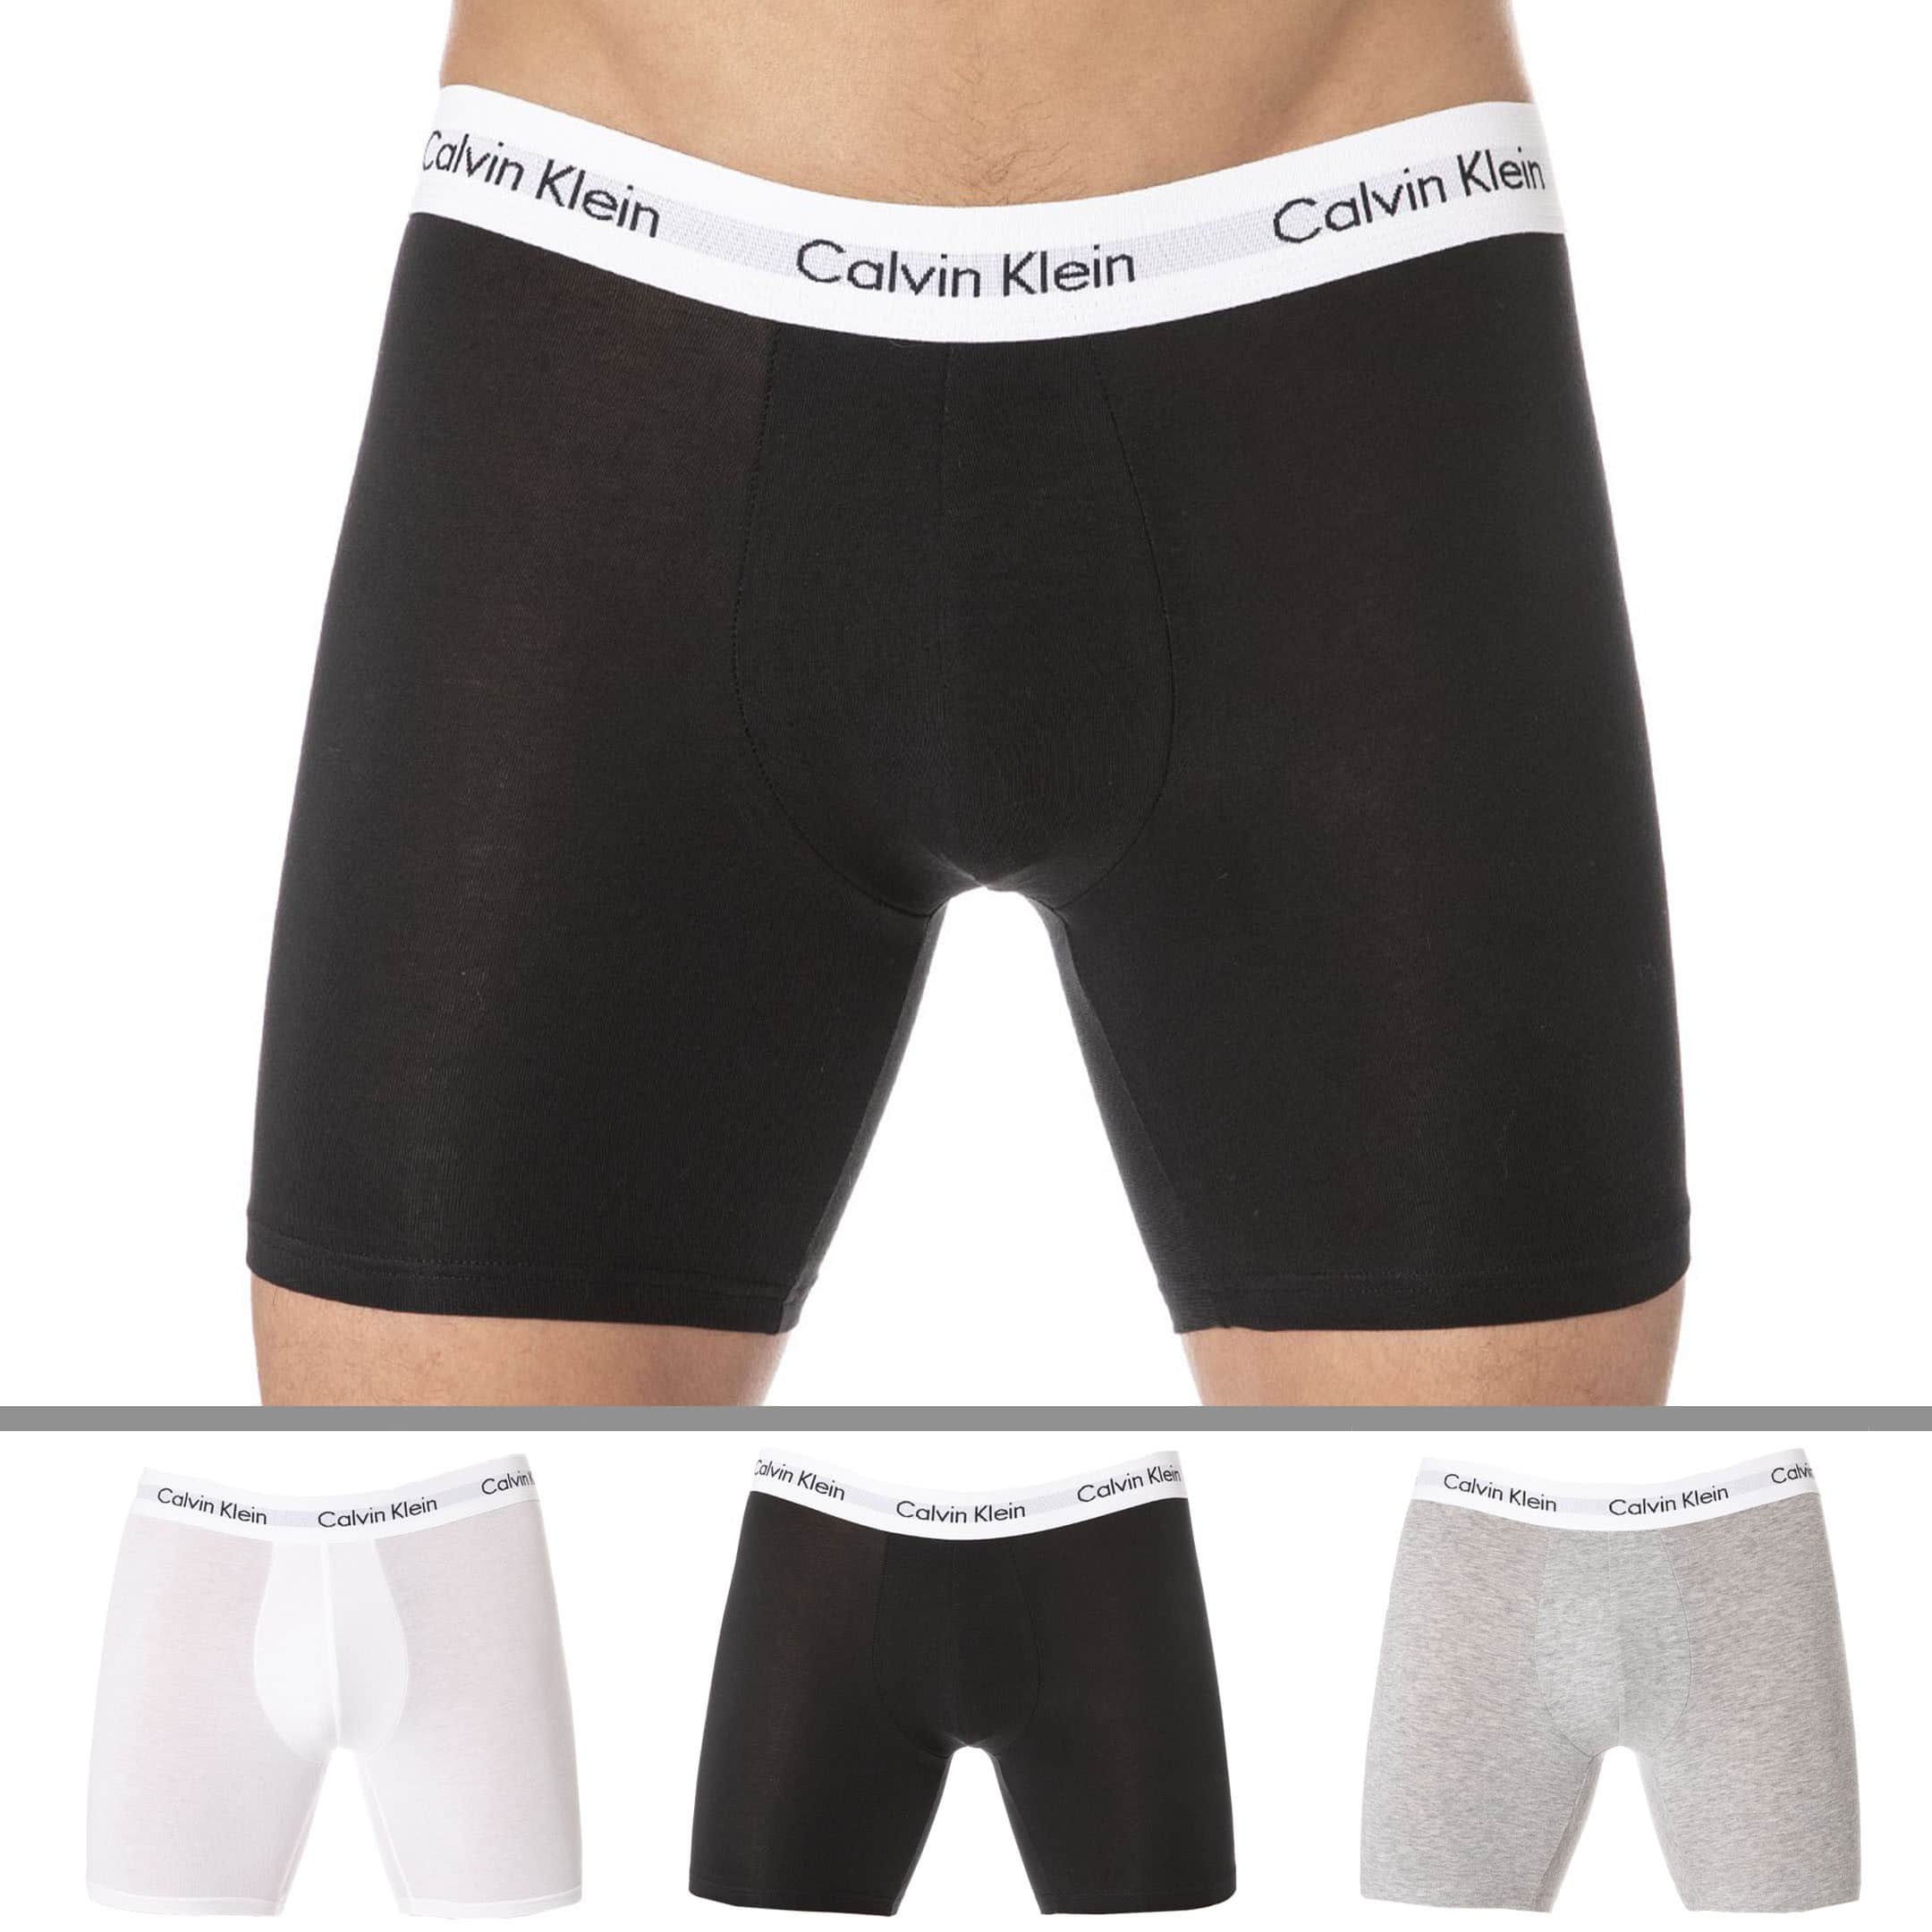 Calvin Klein Cotton Stretch 3 Pack Boxer Brief, Black/White/Grey